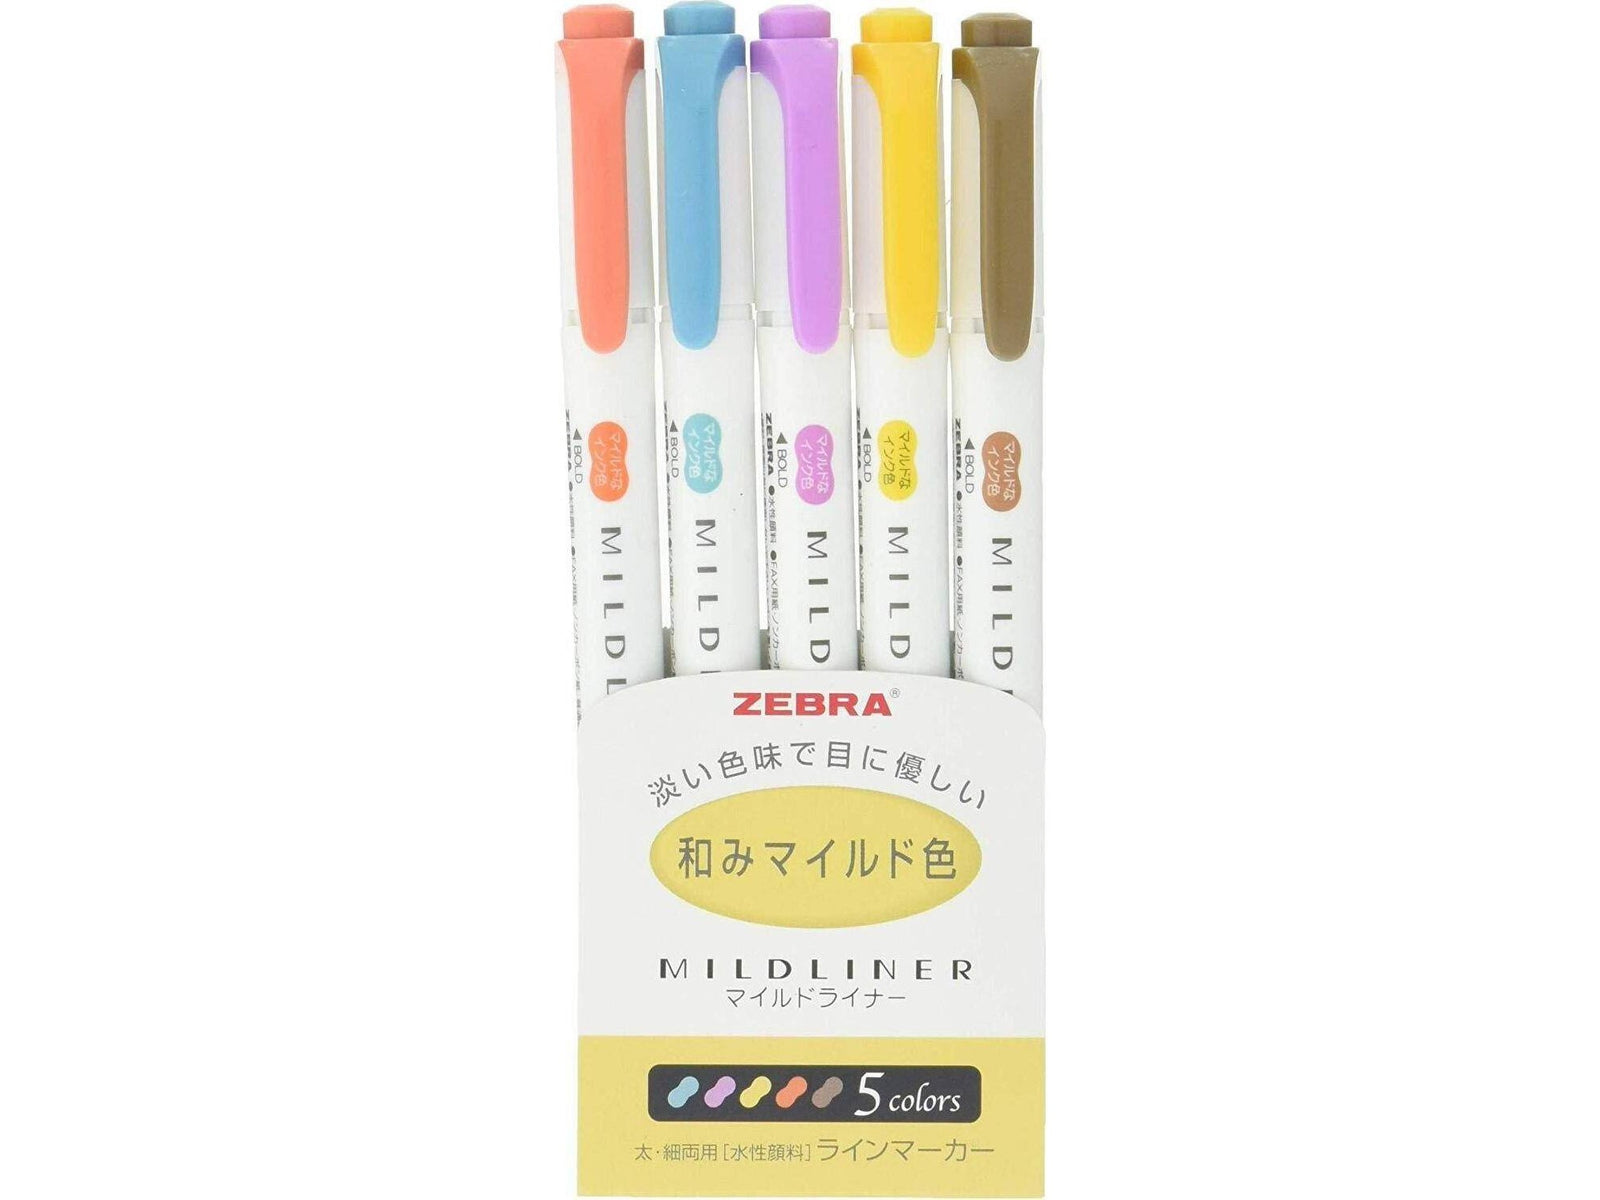 Zebra Mild liner Pen /marker pen color set Highlighter Yellow Color